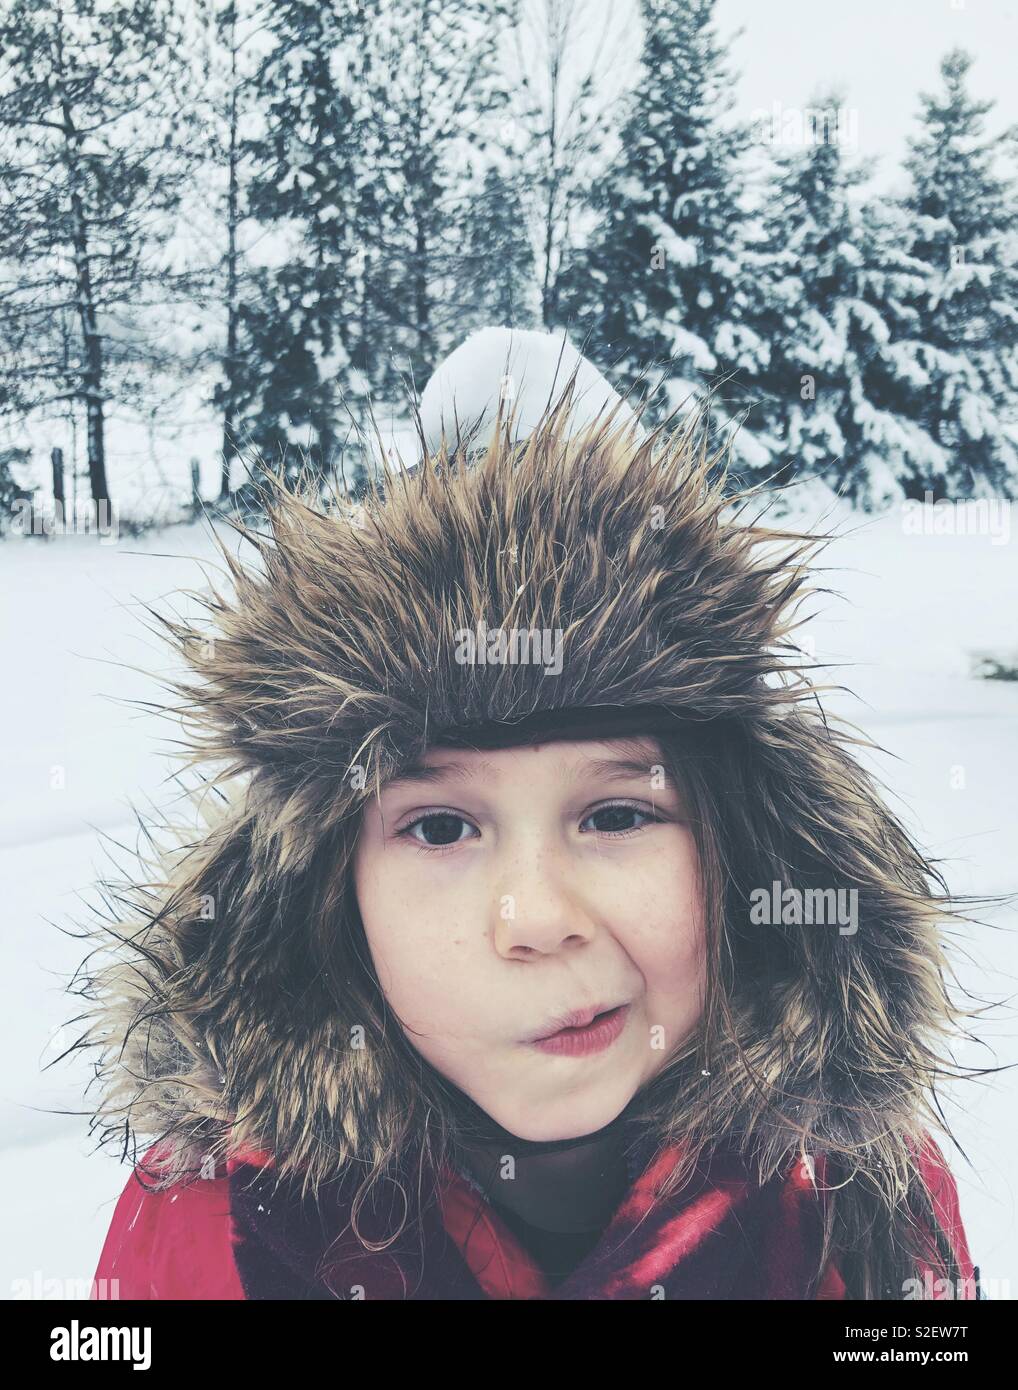 6-Jähriges Mädchen außerhalb tragen furry Trapper hat im Schnee mit schneeball auf dem Kopf und lustige Ausdruck Stockfoto